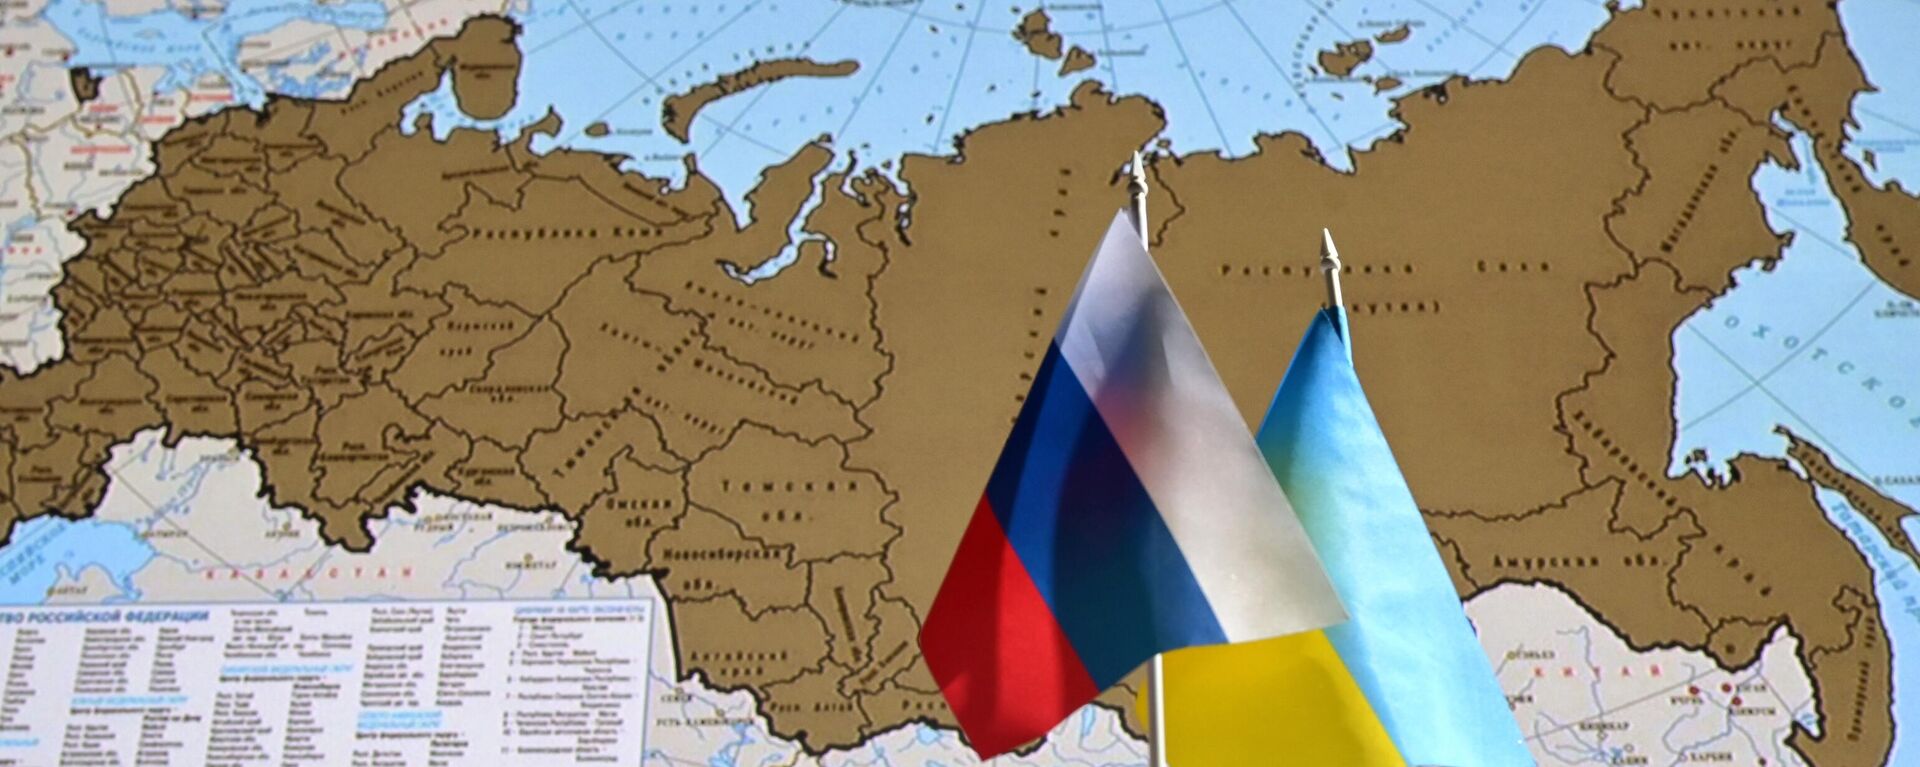 Государственные флаги России и Украины. - Sputnik Абхазия, 1920, 28.02.2022